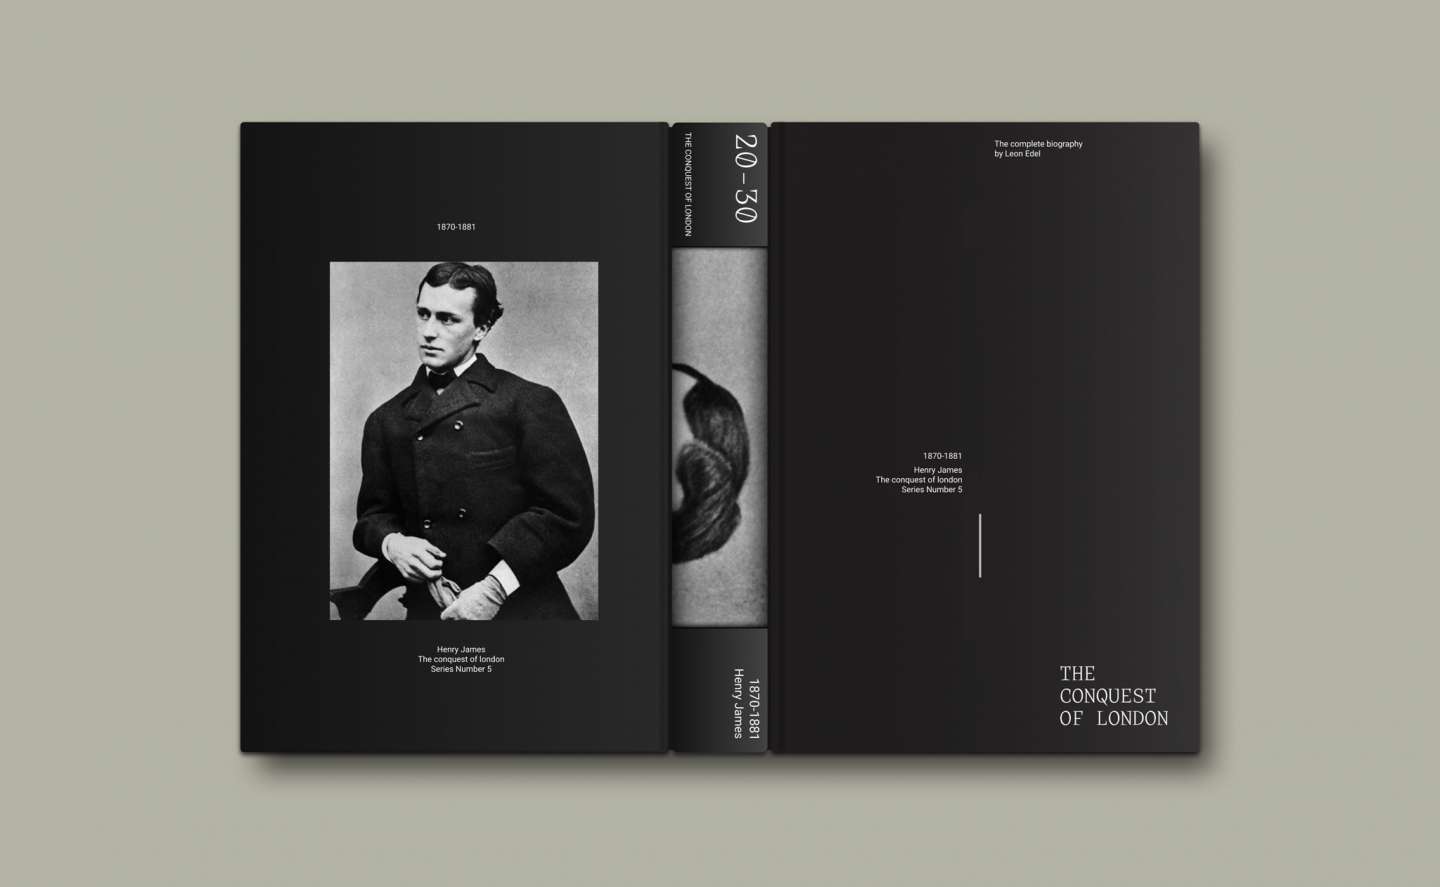 Henry James Biography set design